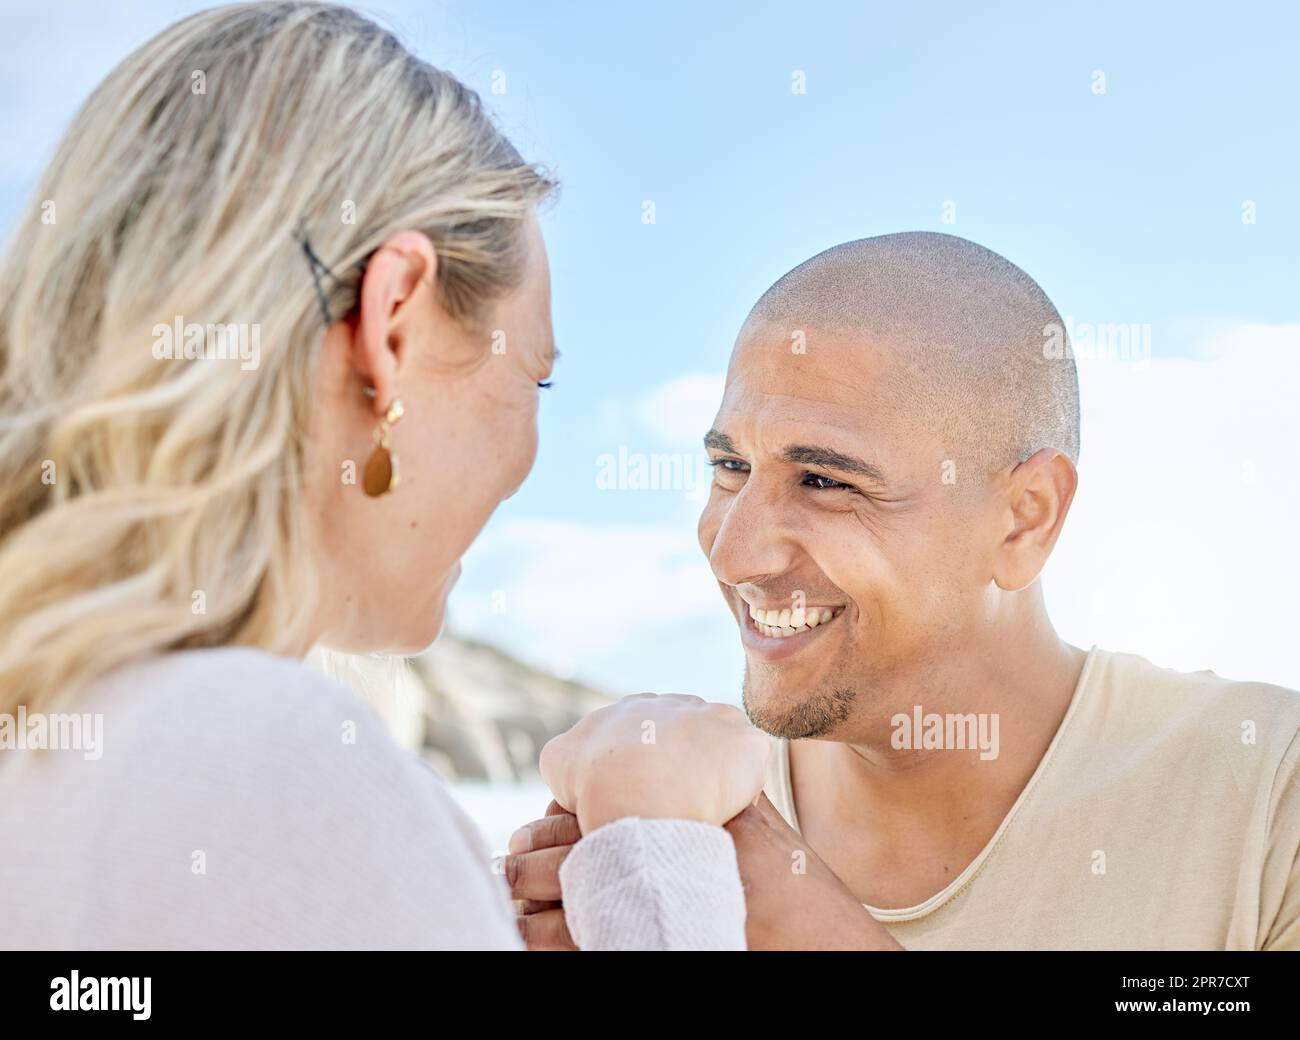 Un jeune homme proposant à sa petite amie à la plage en été. Couple interracial heureux tenant les mains et souriant. Bientôt pour être mari et femme regardant avec amour dans un autre yeux dehors Banque D'Images